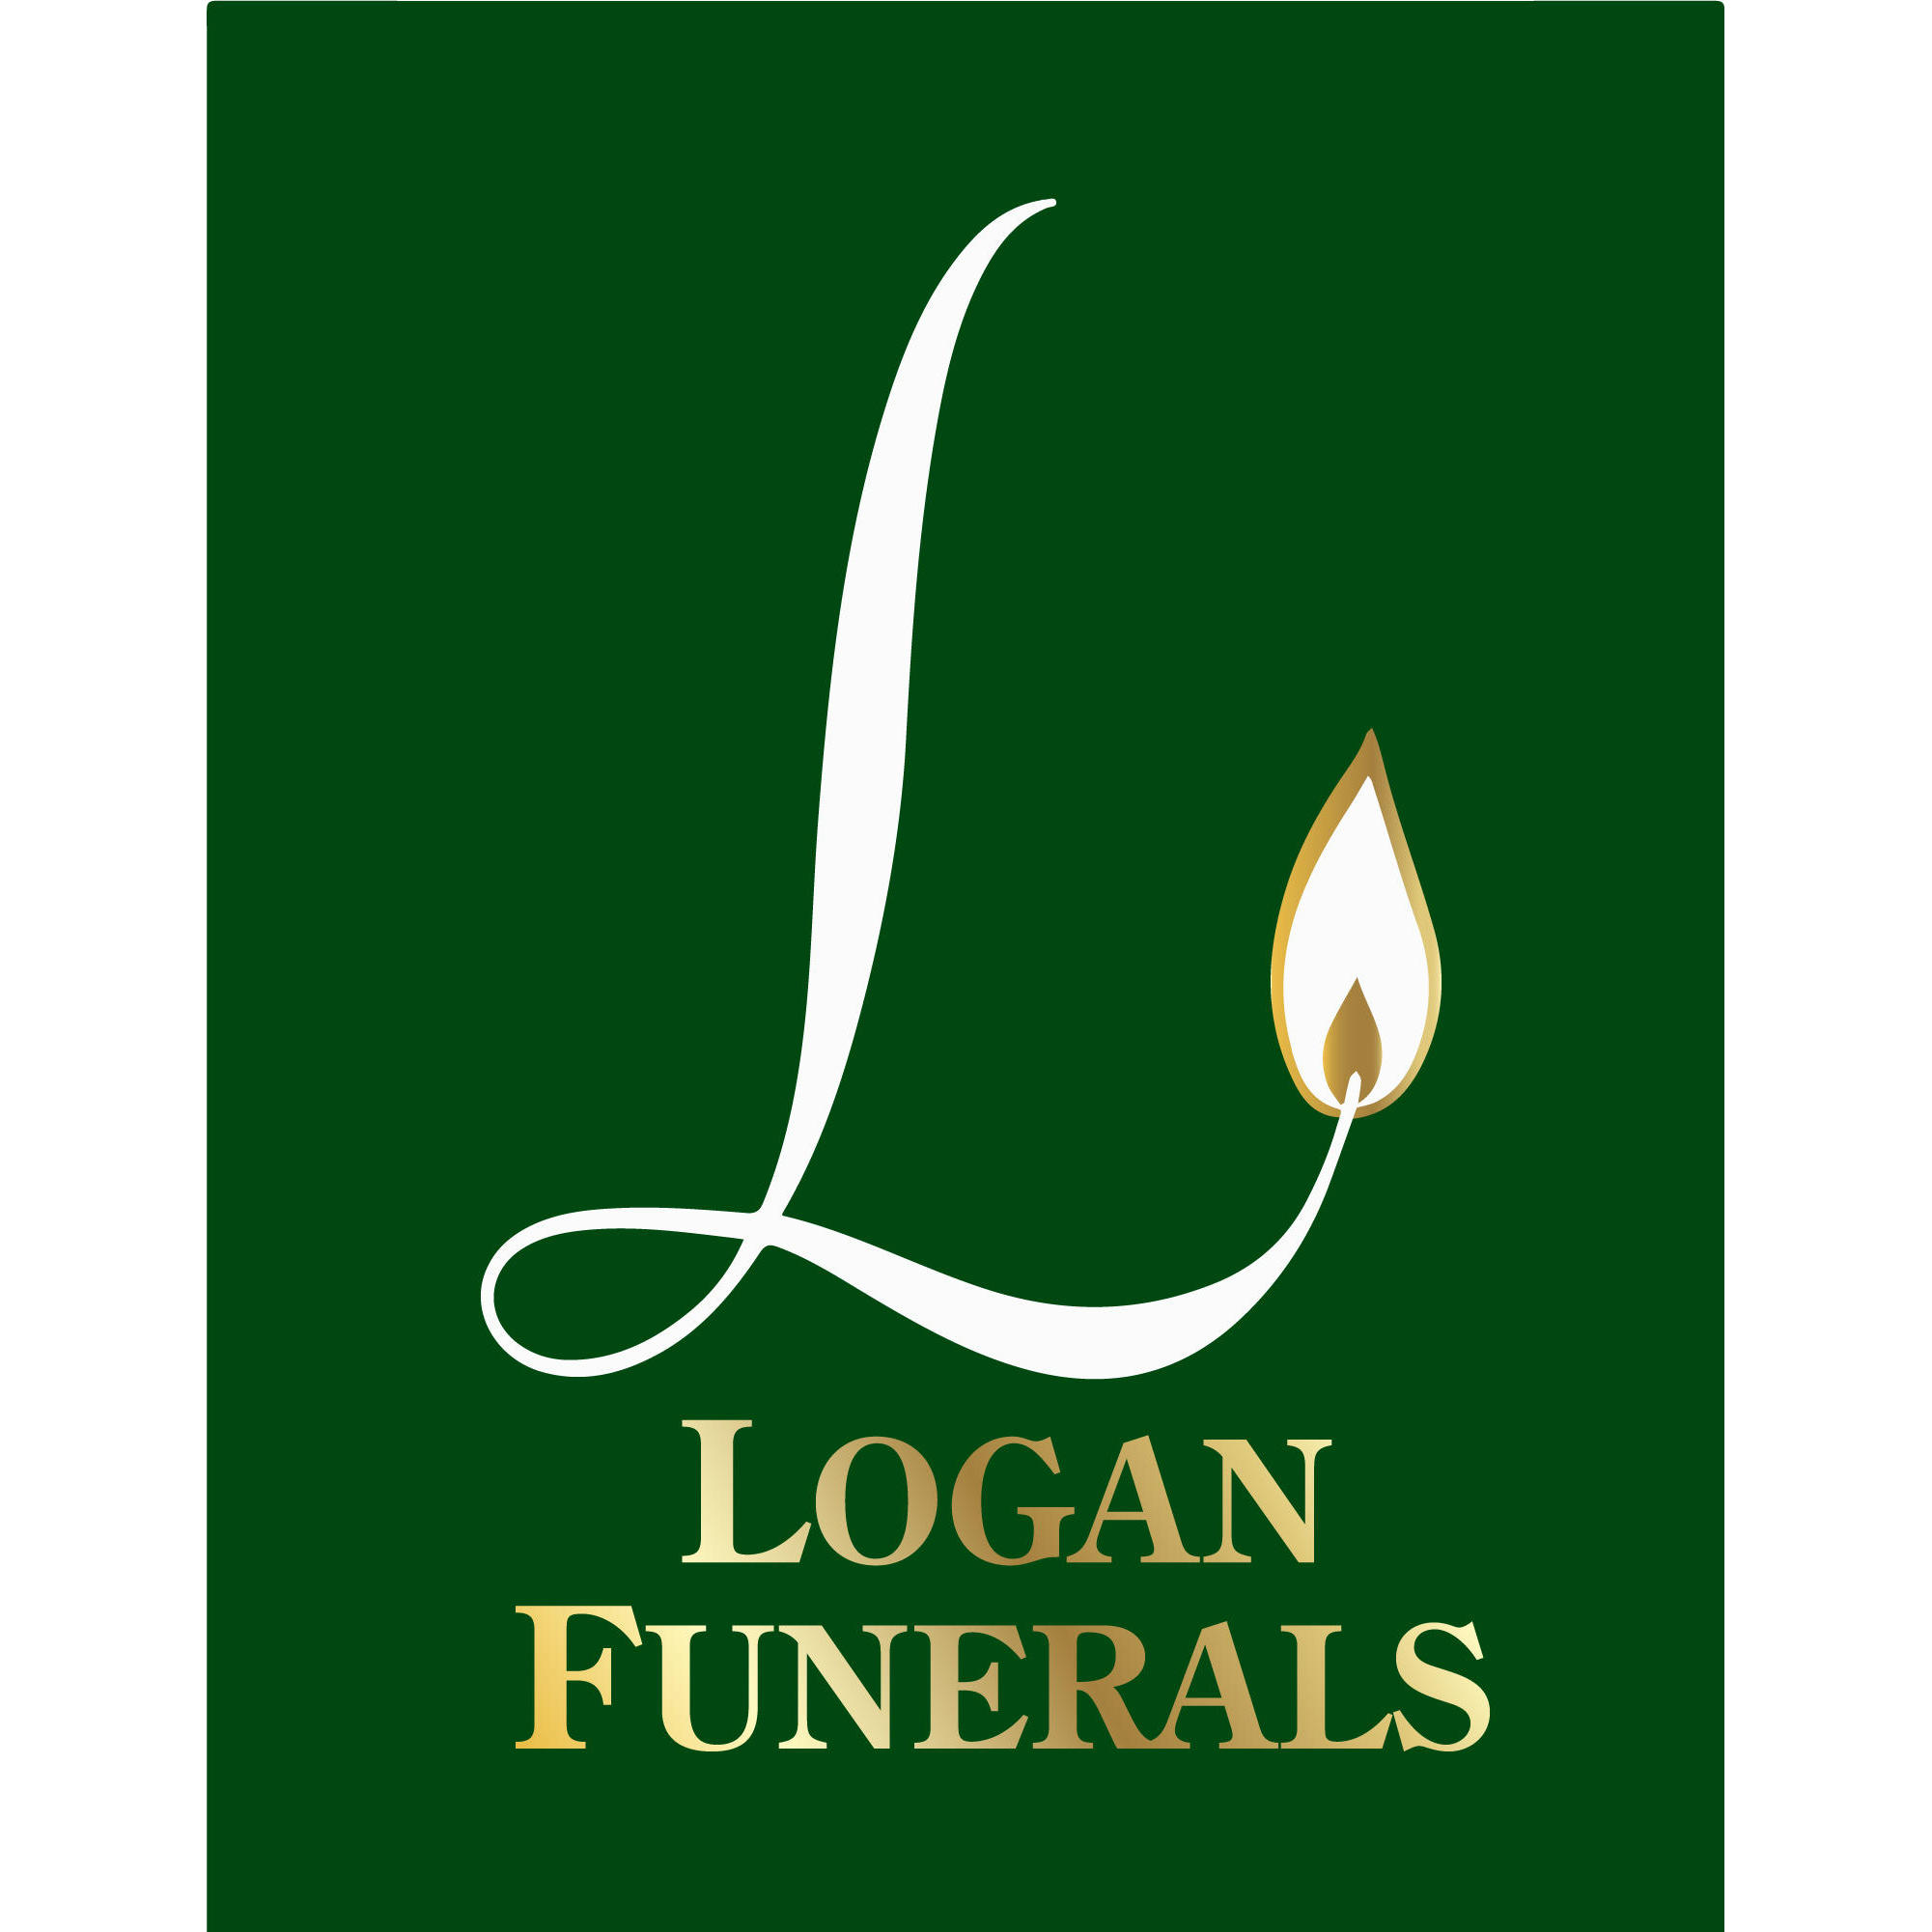 Logan Funerals - Narrabri, NSW 2390 - (02) 6792 3444 | ShowMeLocal.com